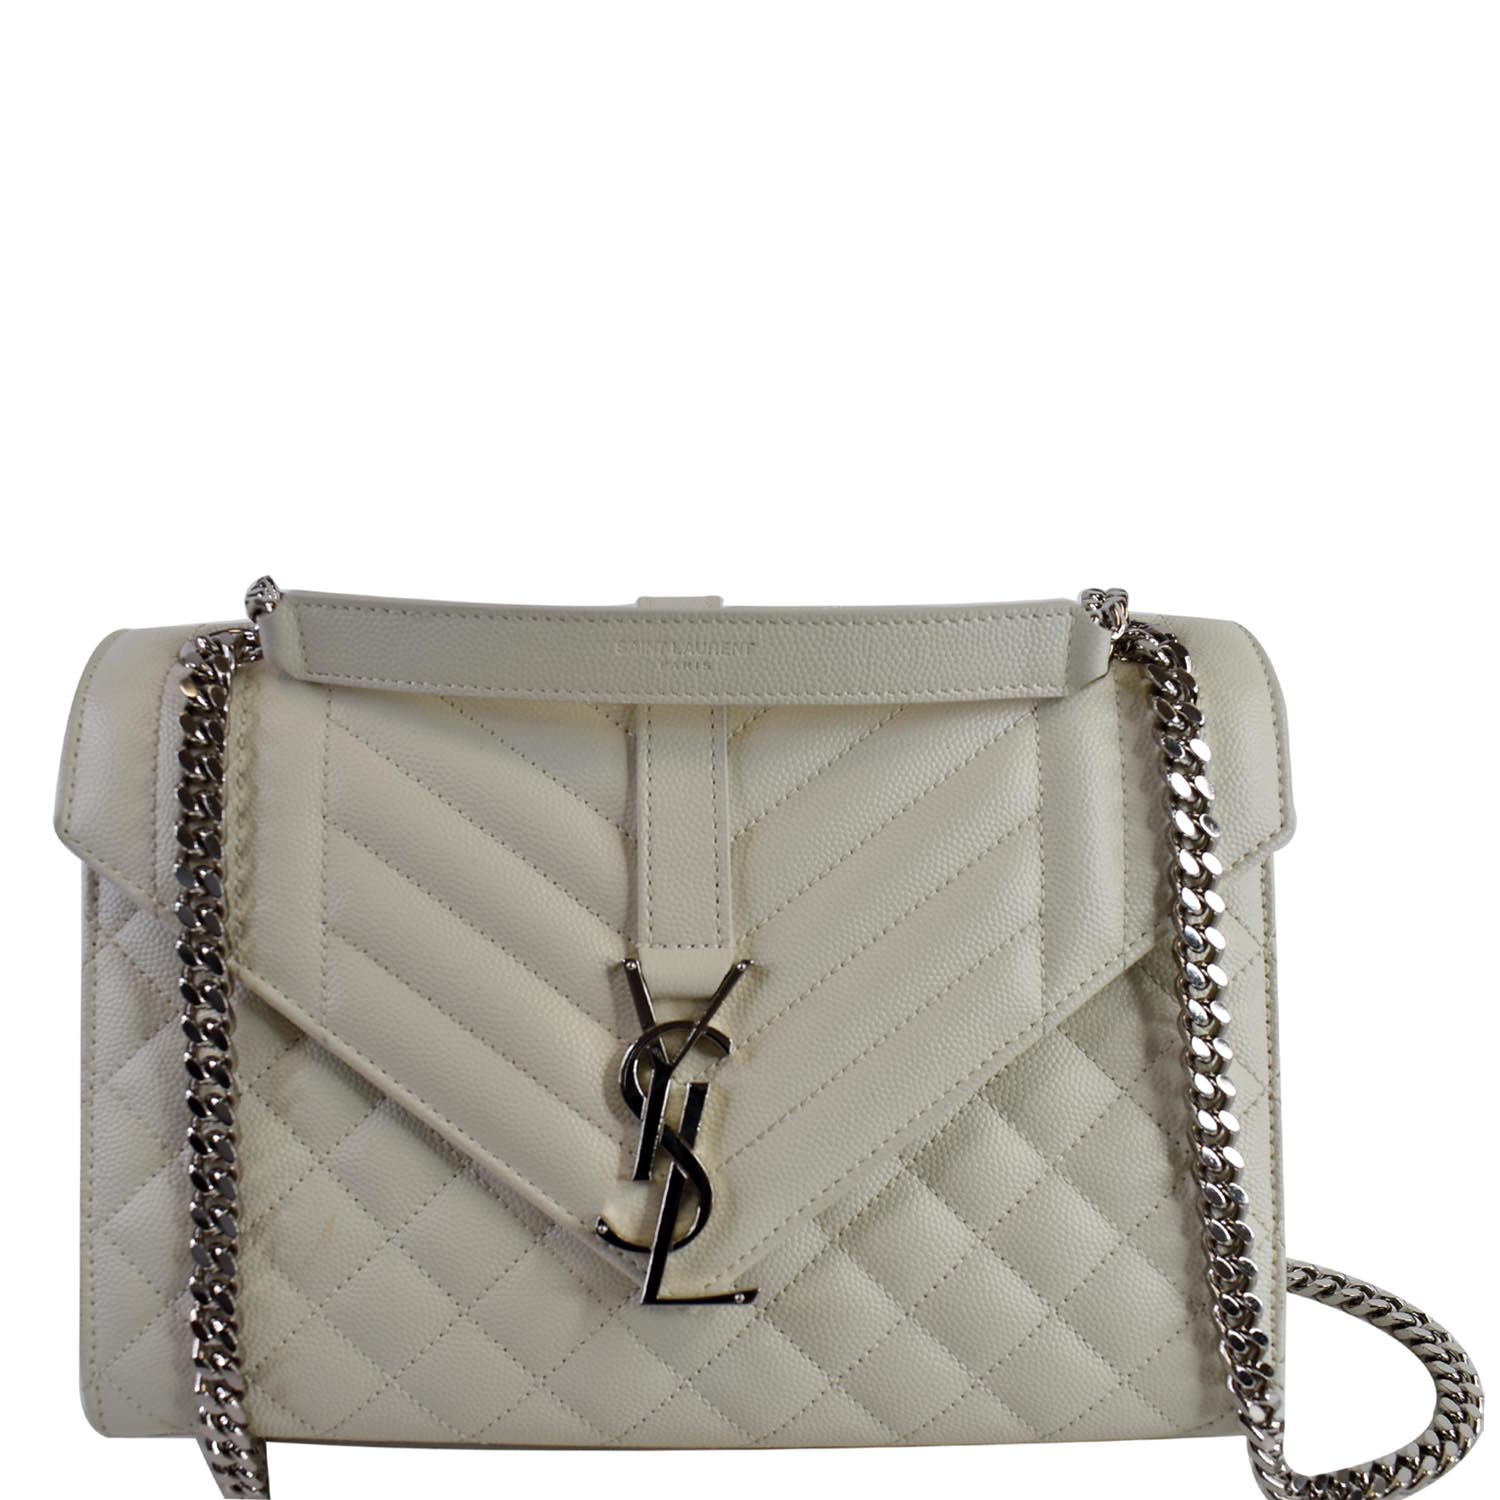 Saint Laurent Medium Tri-quilt Leather Envelope Bag in White